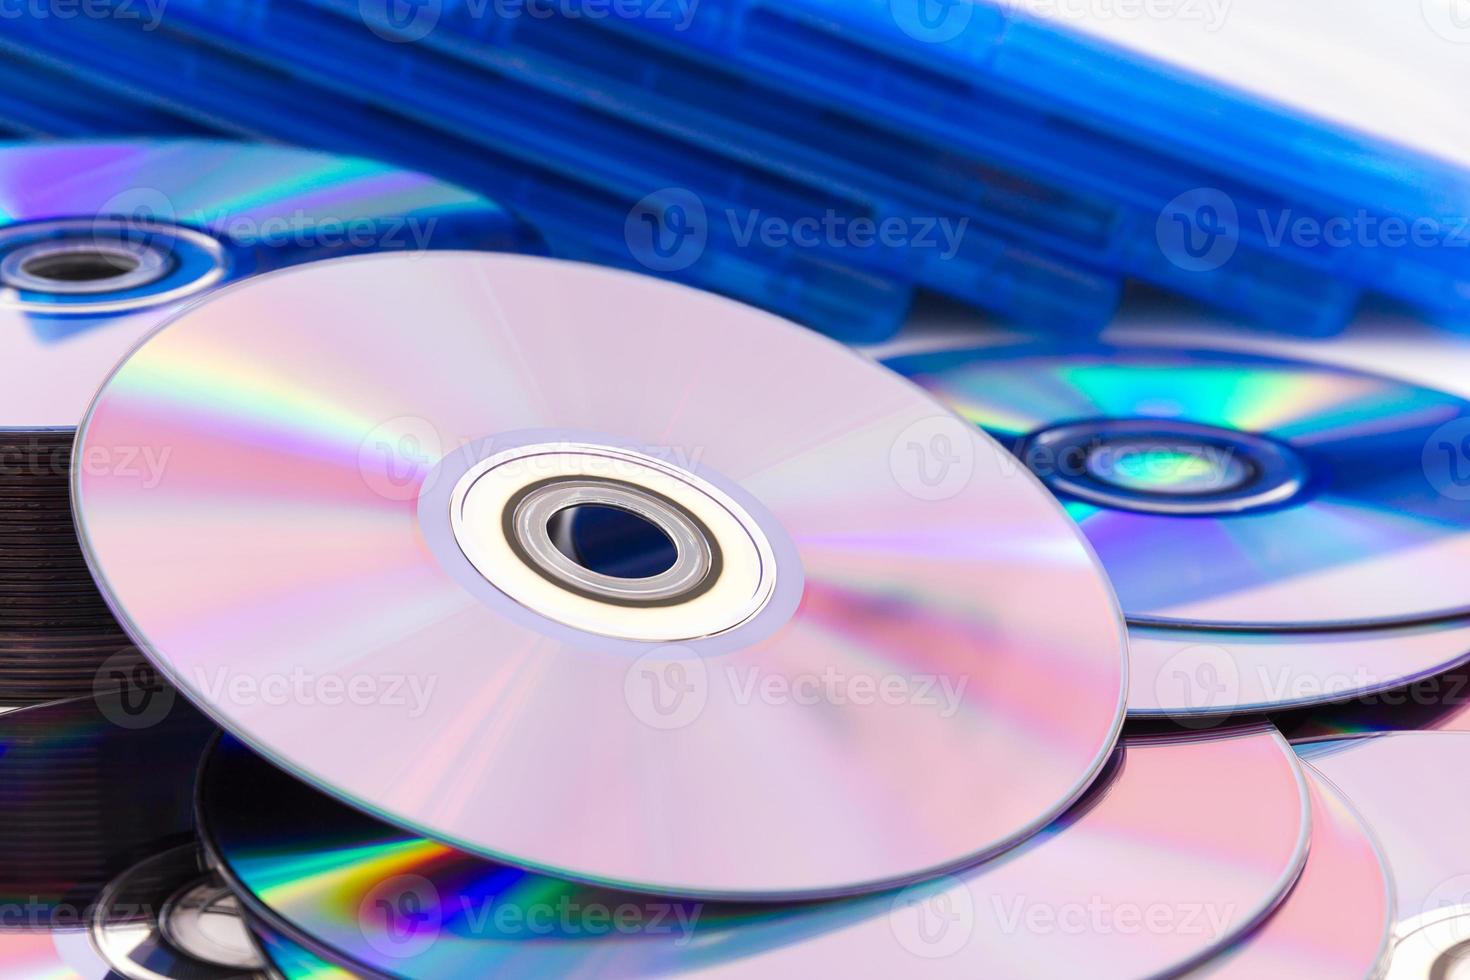 cerrar discos compactos cd dvd foto